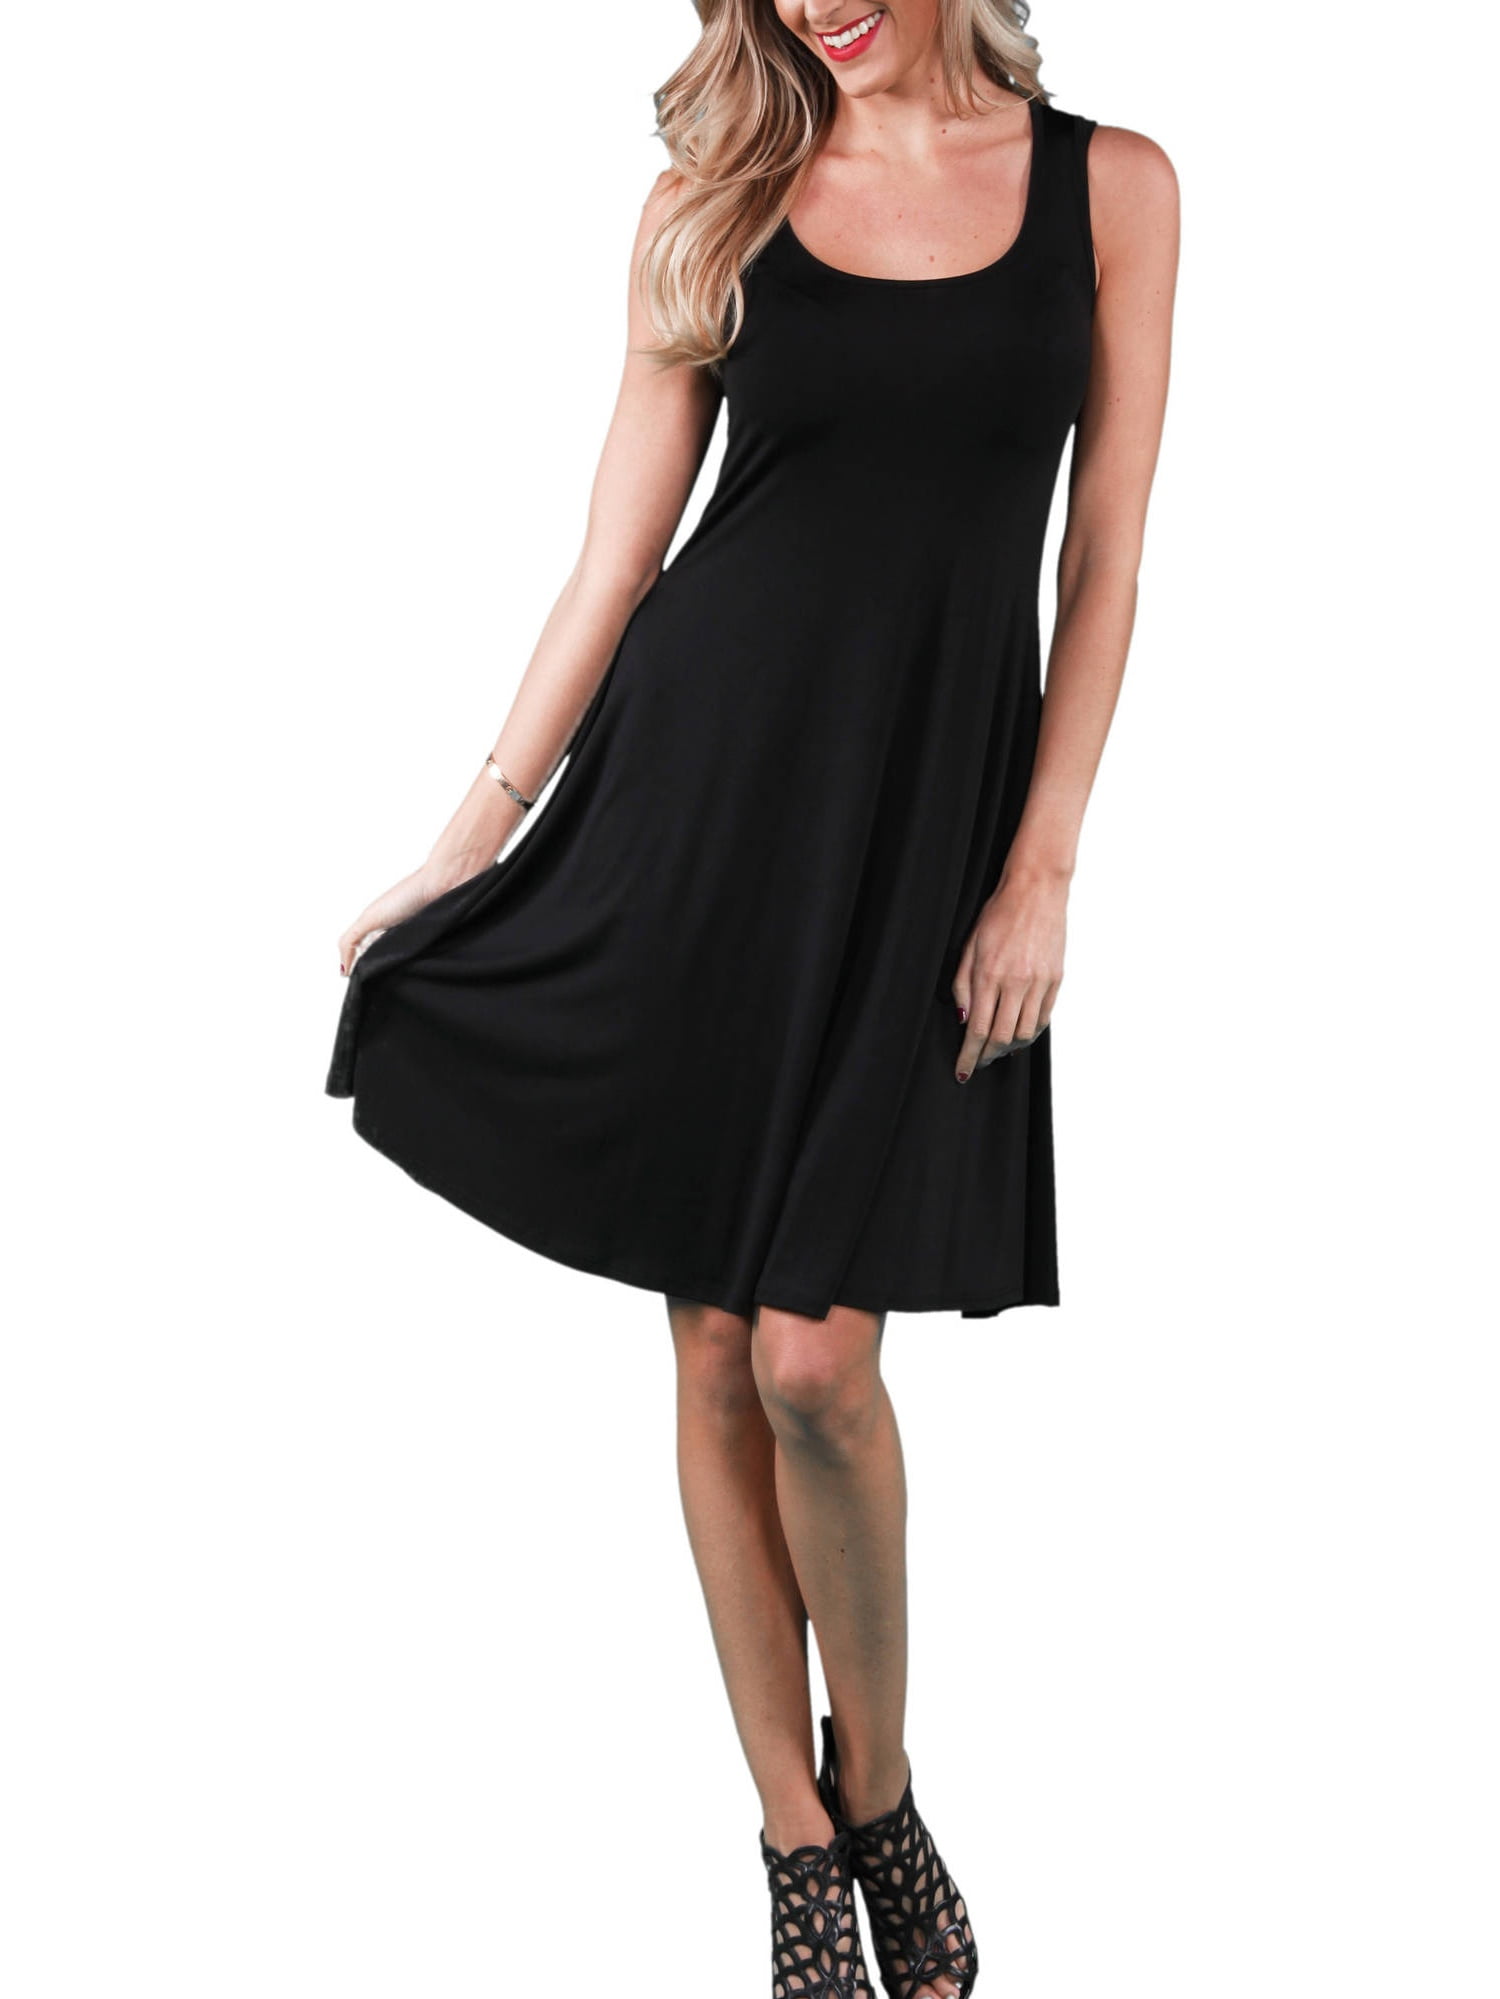 Women's Sleeveless Tank Knee-Length Dress - Walmart.com